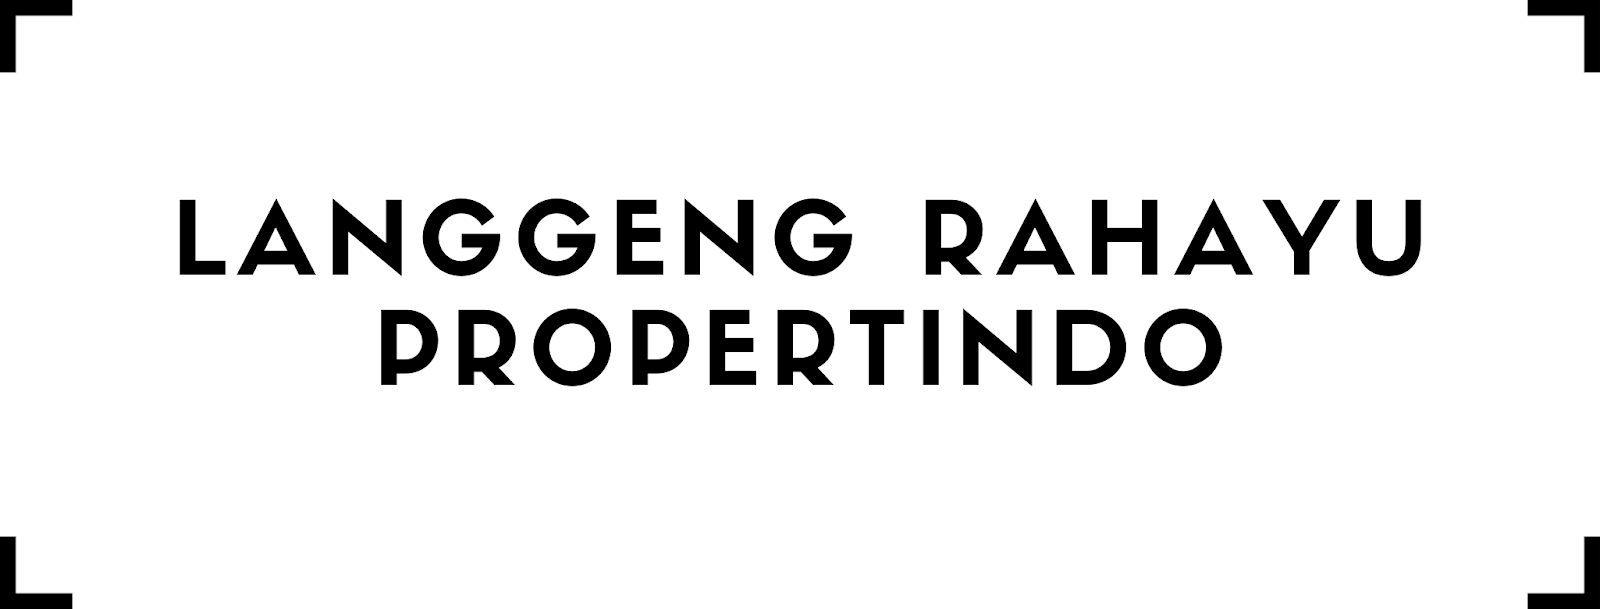 PT LANGGENG RAHAYU PROPERTINDO